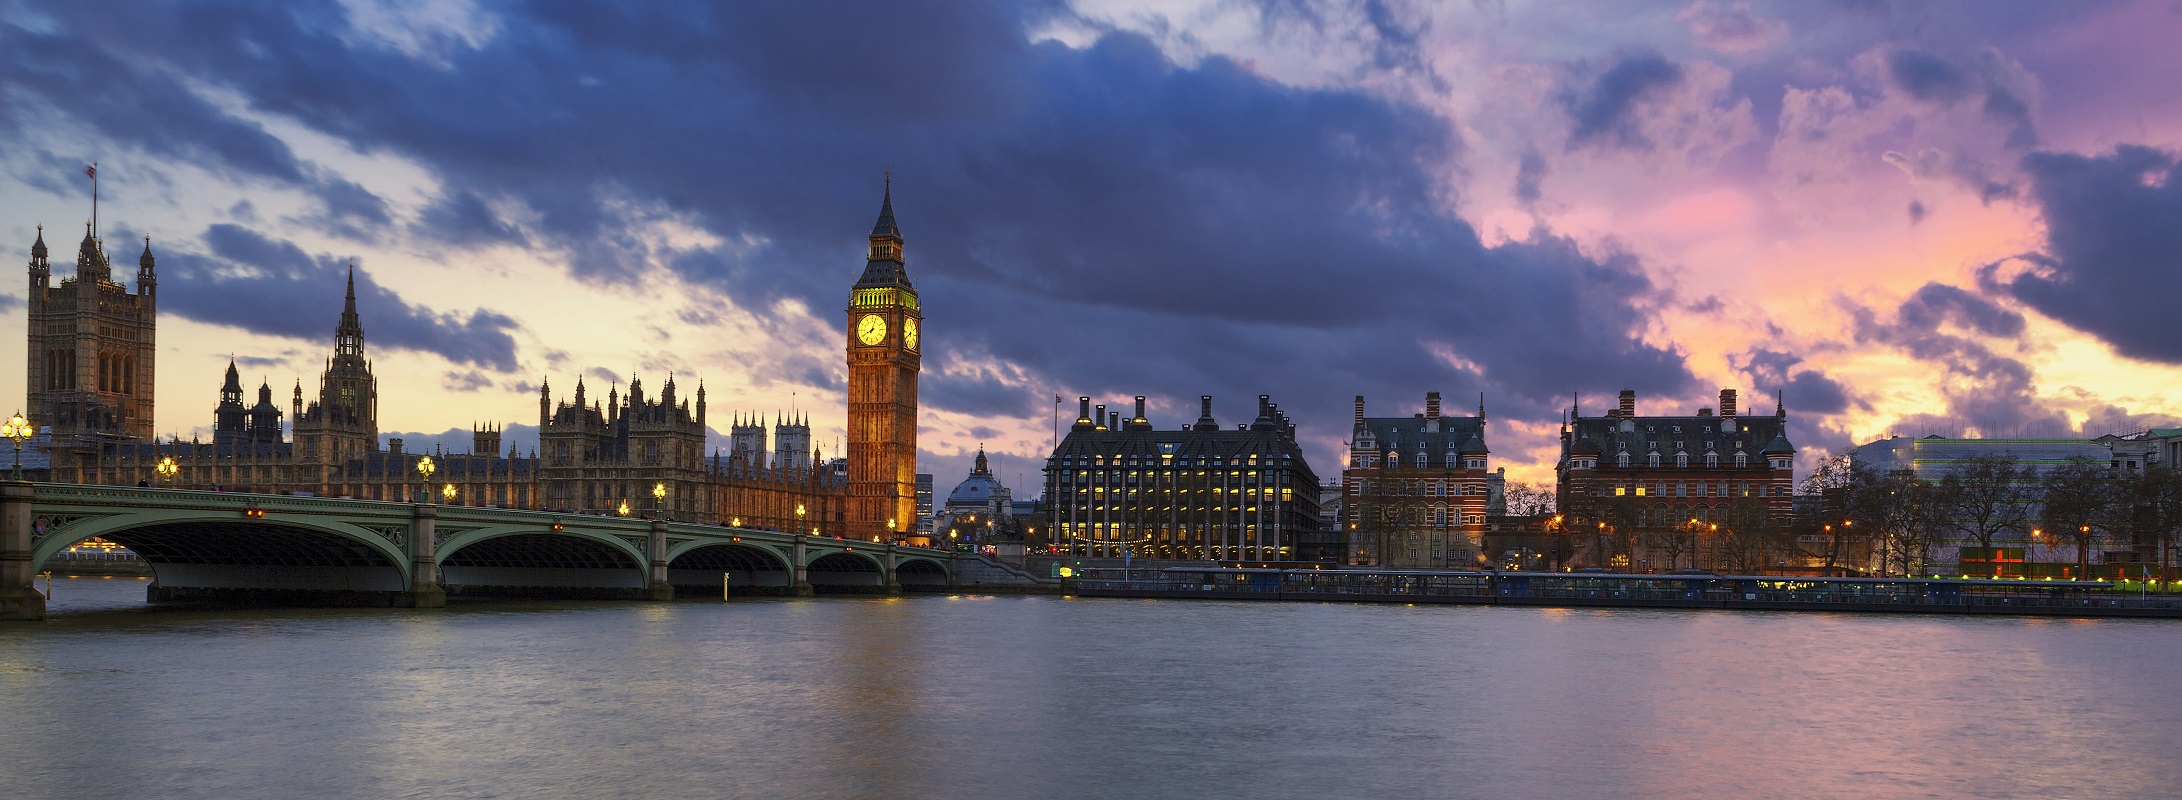 London panorama night view